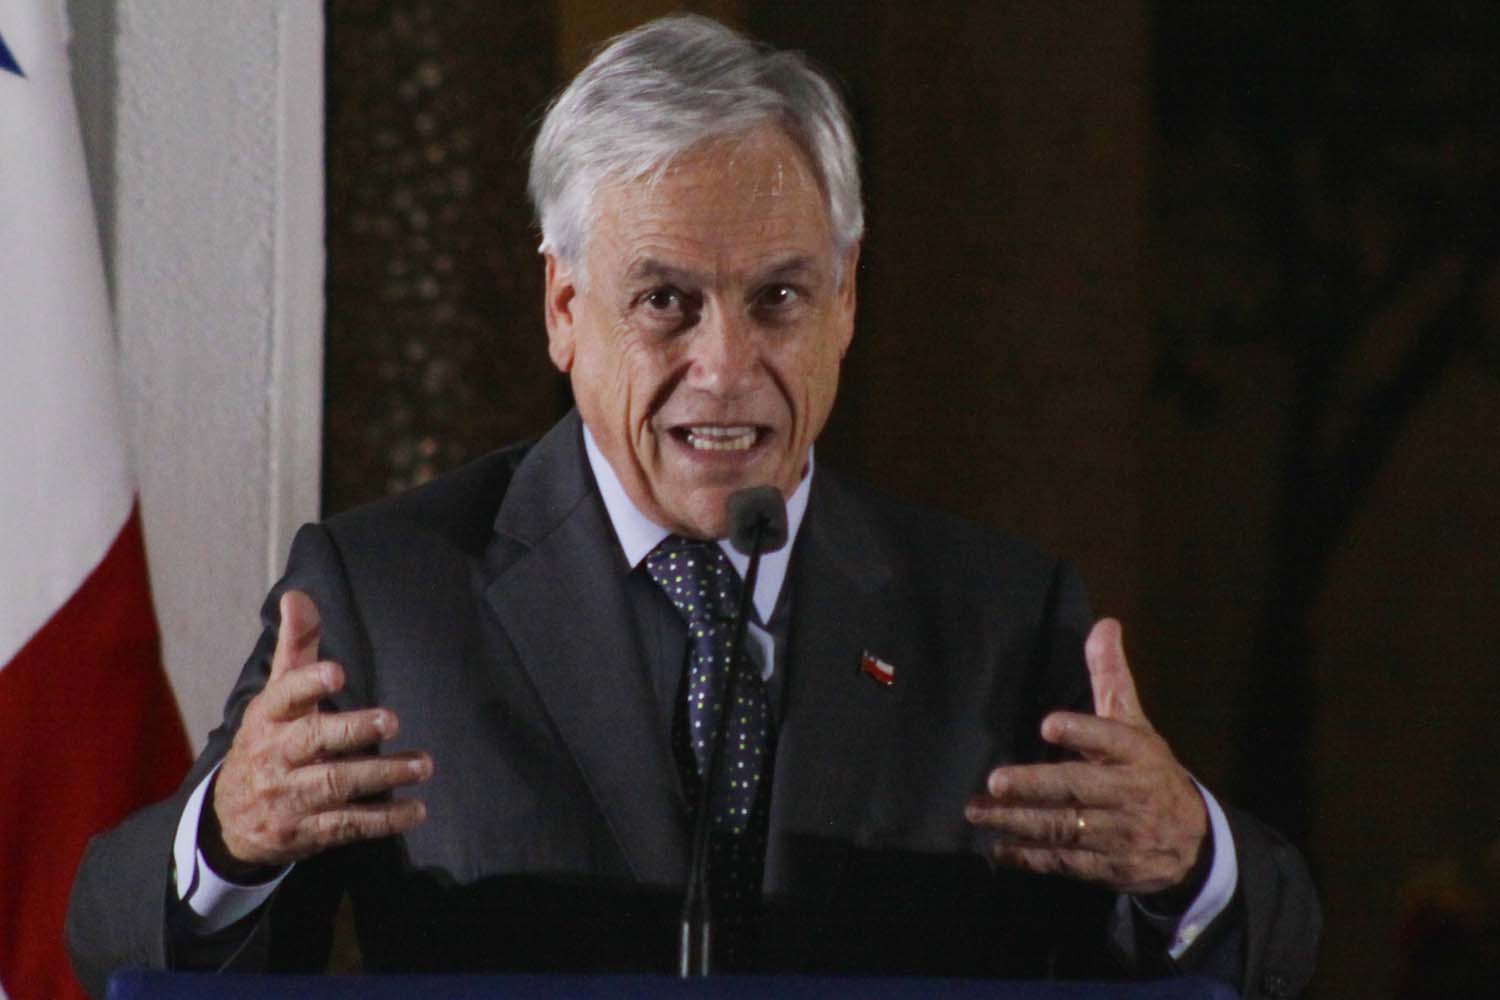 Sebastián Piñera: El presidente creó falsas expectativas y nos ha hecho perder 5 años #1Oct (Video)